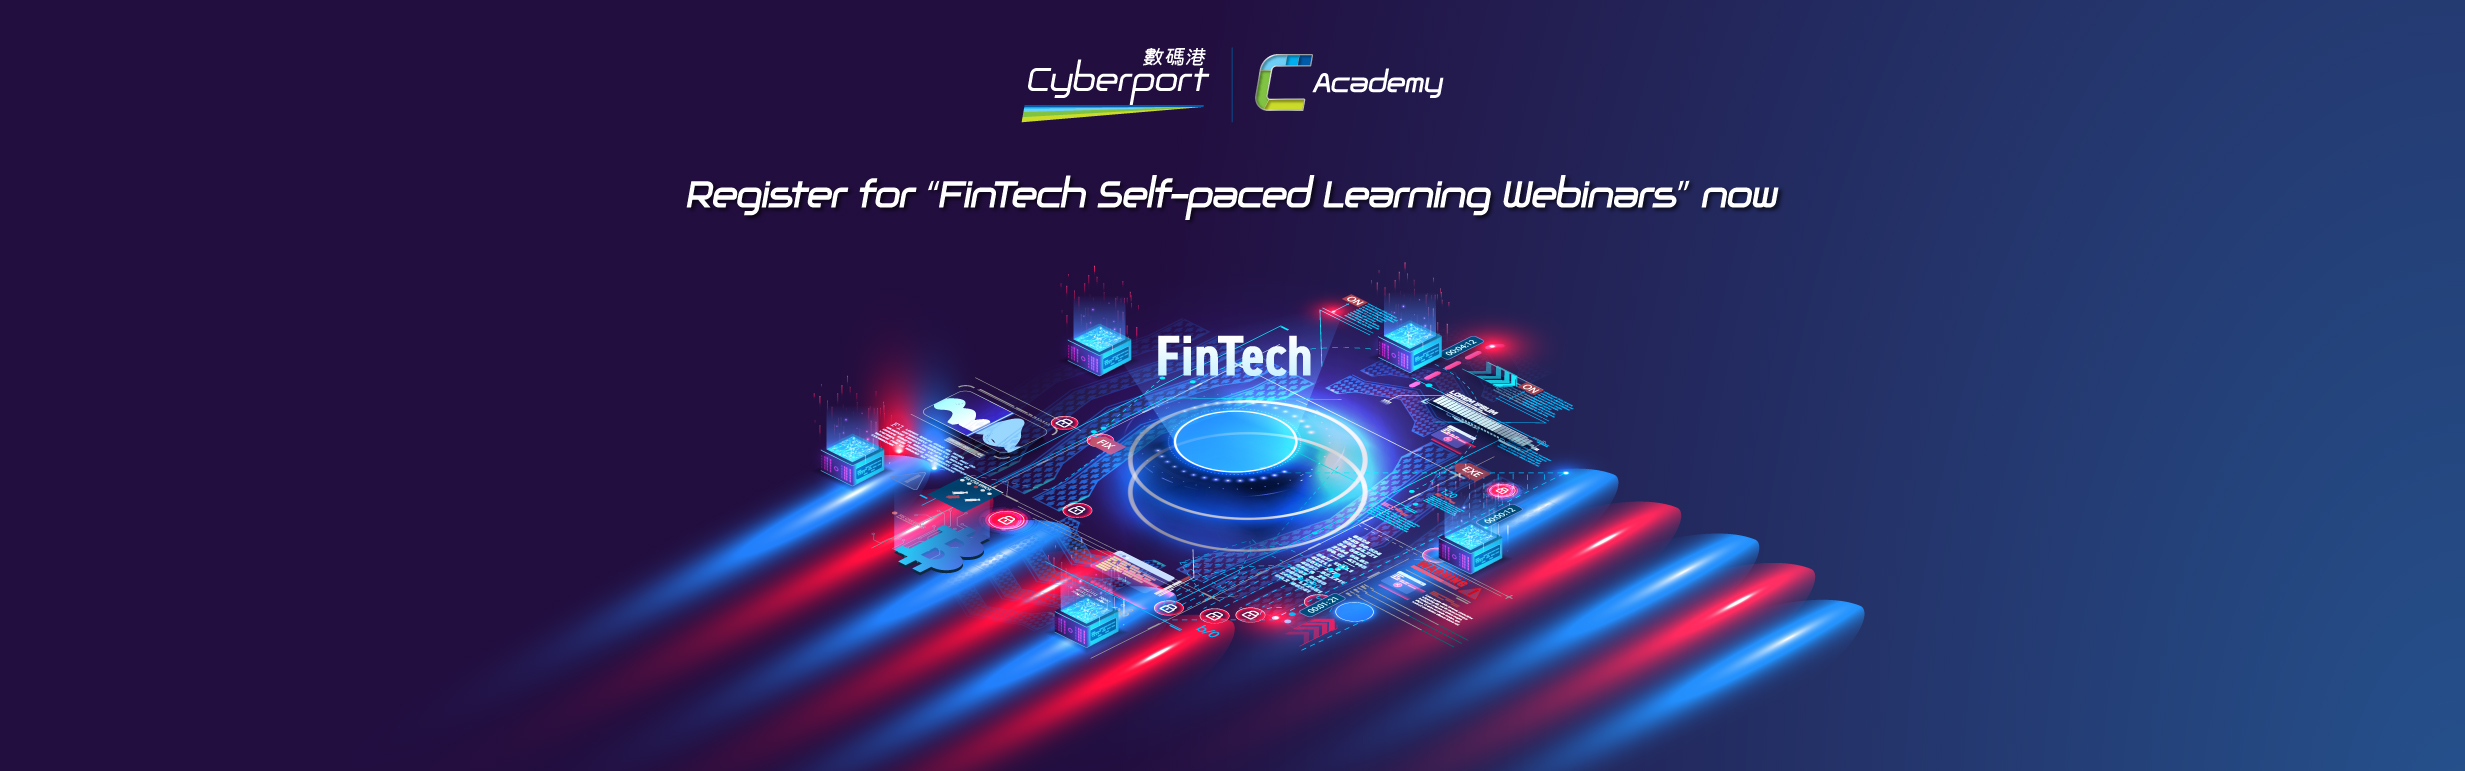 FinTech Self-paced Learning Webinars